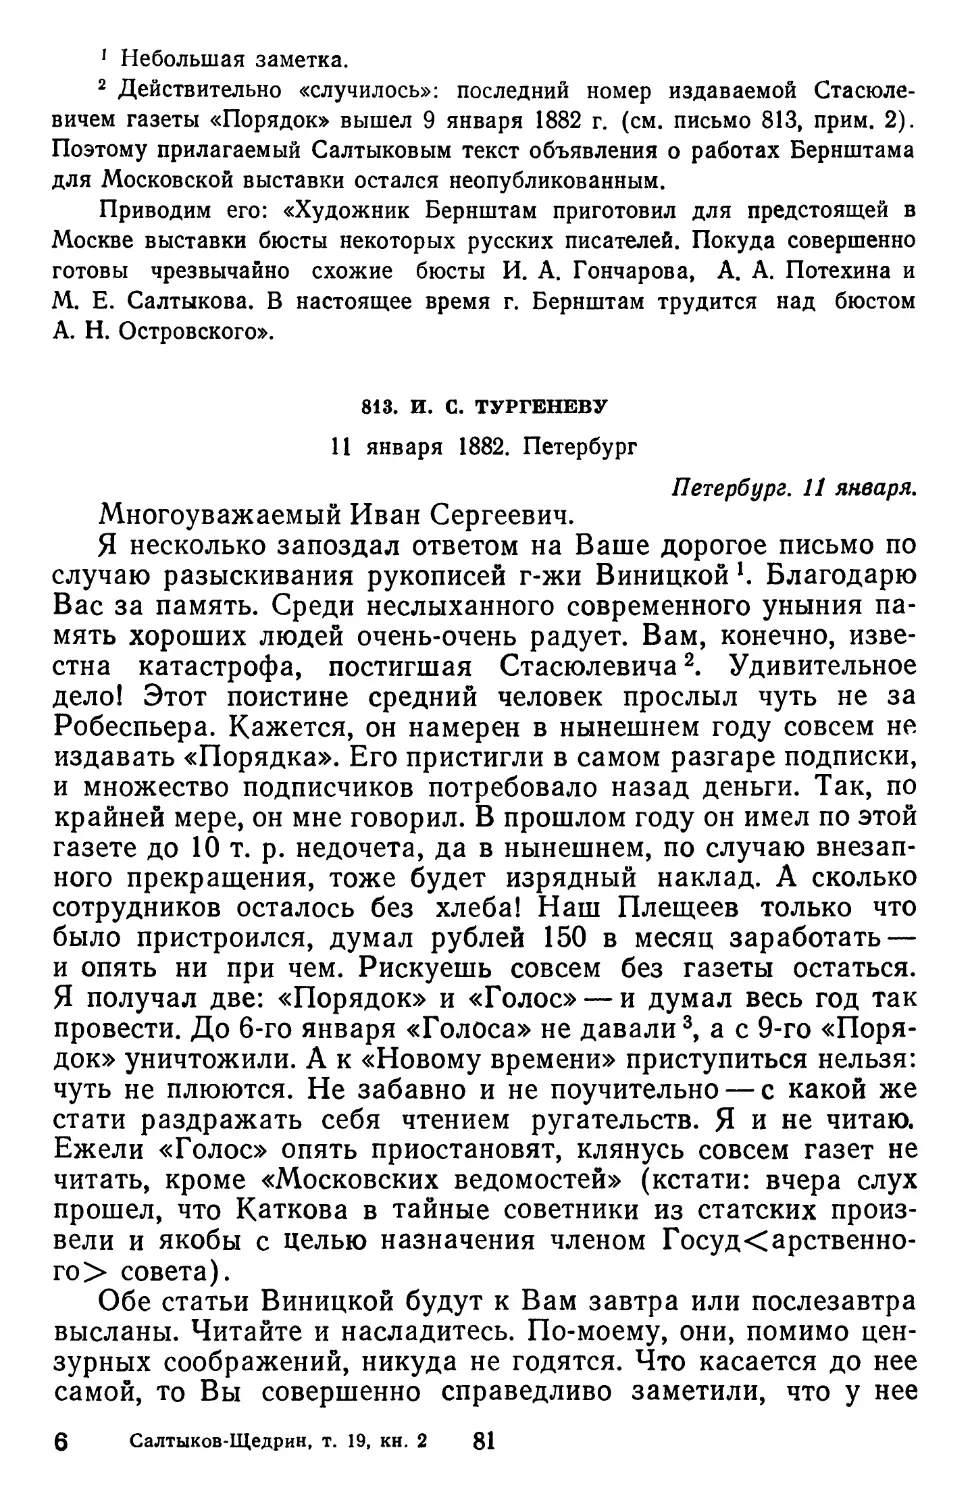 813.И. С. Тургеневу. 11 января 1882. Петербург